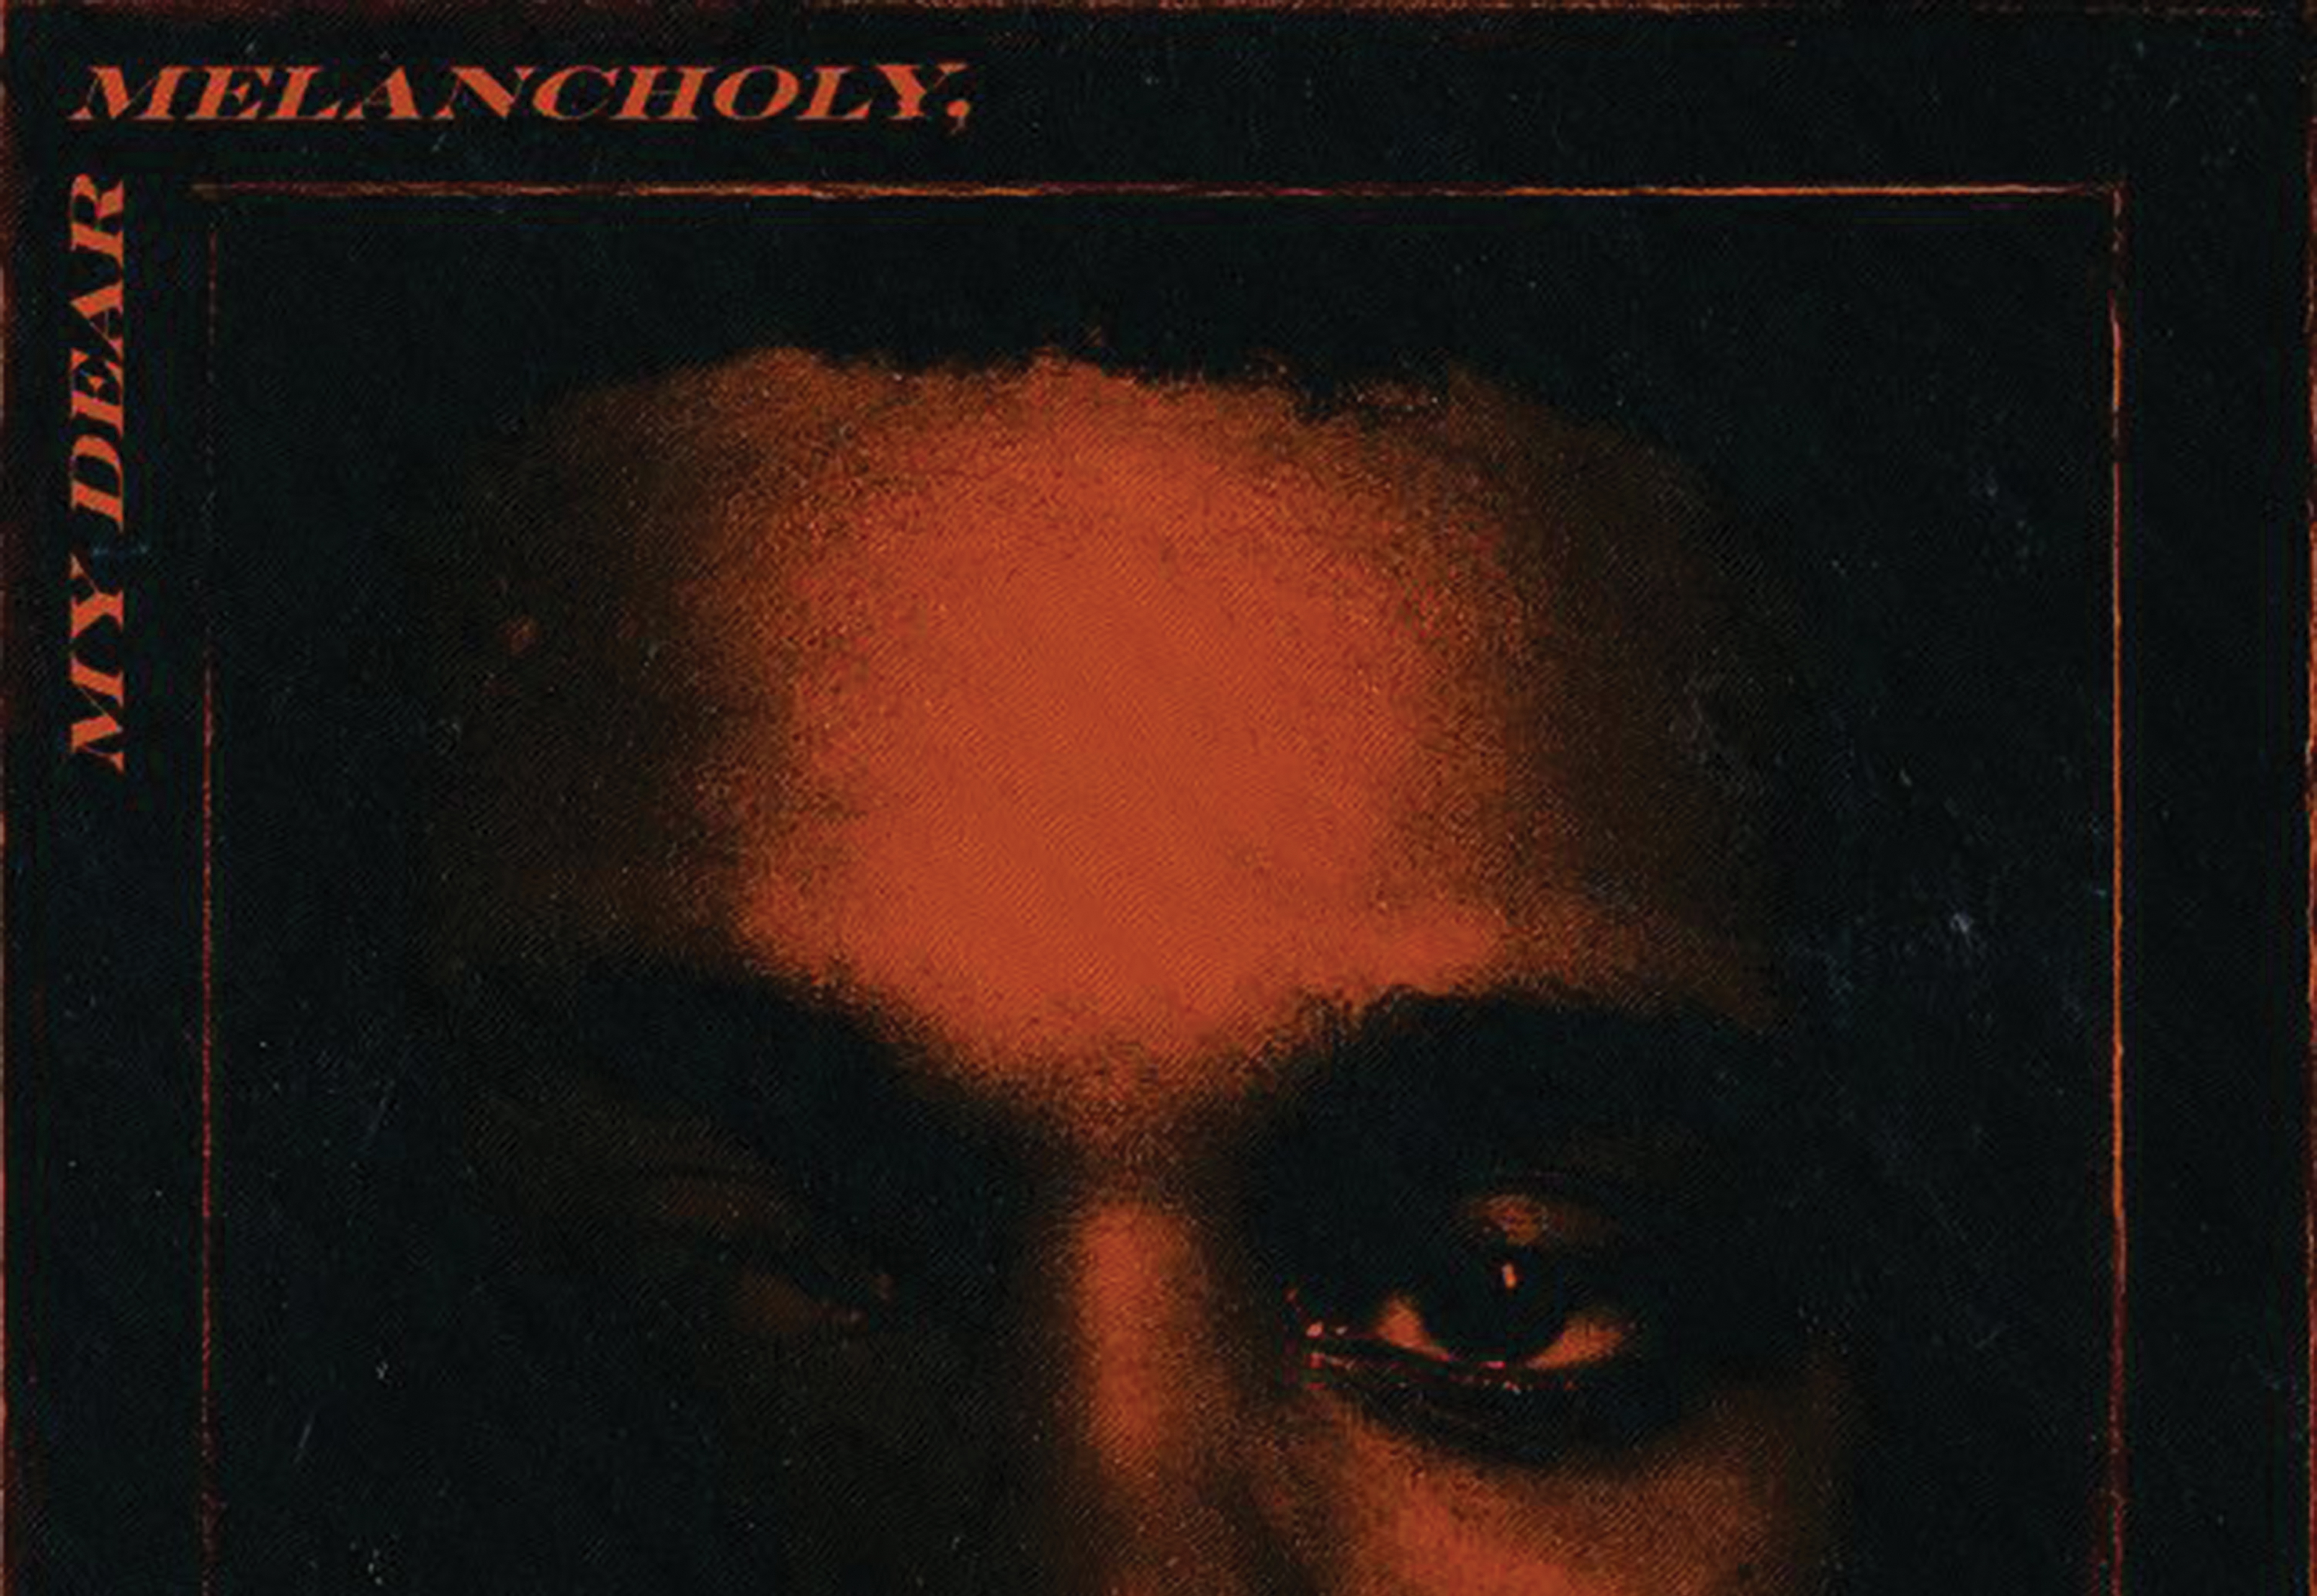 ‘My Dear, Melancholy’: The Weeknd Releases an EP Full of Heartbreak